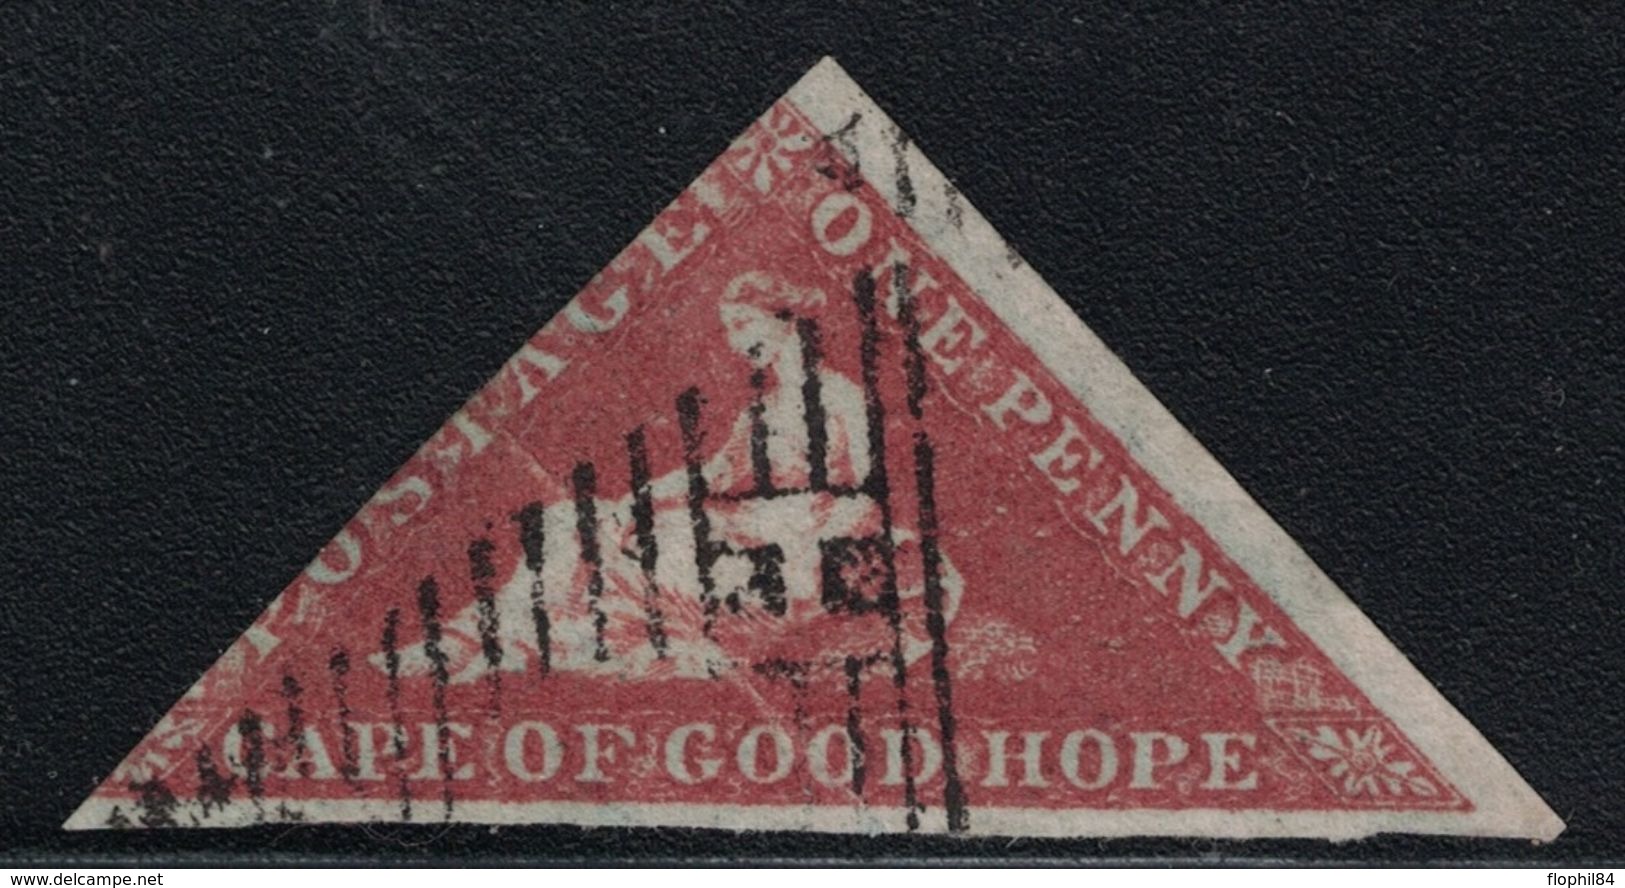 CAP DE BONNE-ESPERANCE - TRIANGULAIRE - N°1 - 1p ROUGE SIGNATURE CALVES - COTE 275€ - TIMBRE COURT D'UN COTE (R). - Cape Of Good Hope (1853-1904)